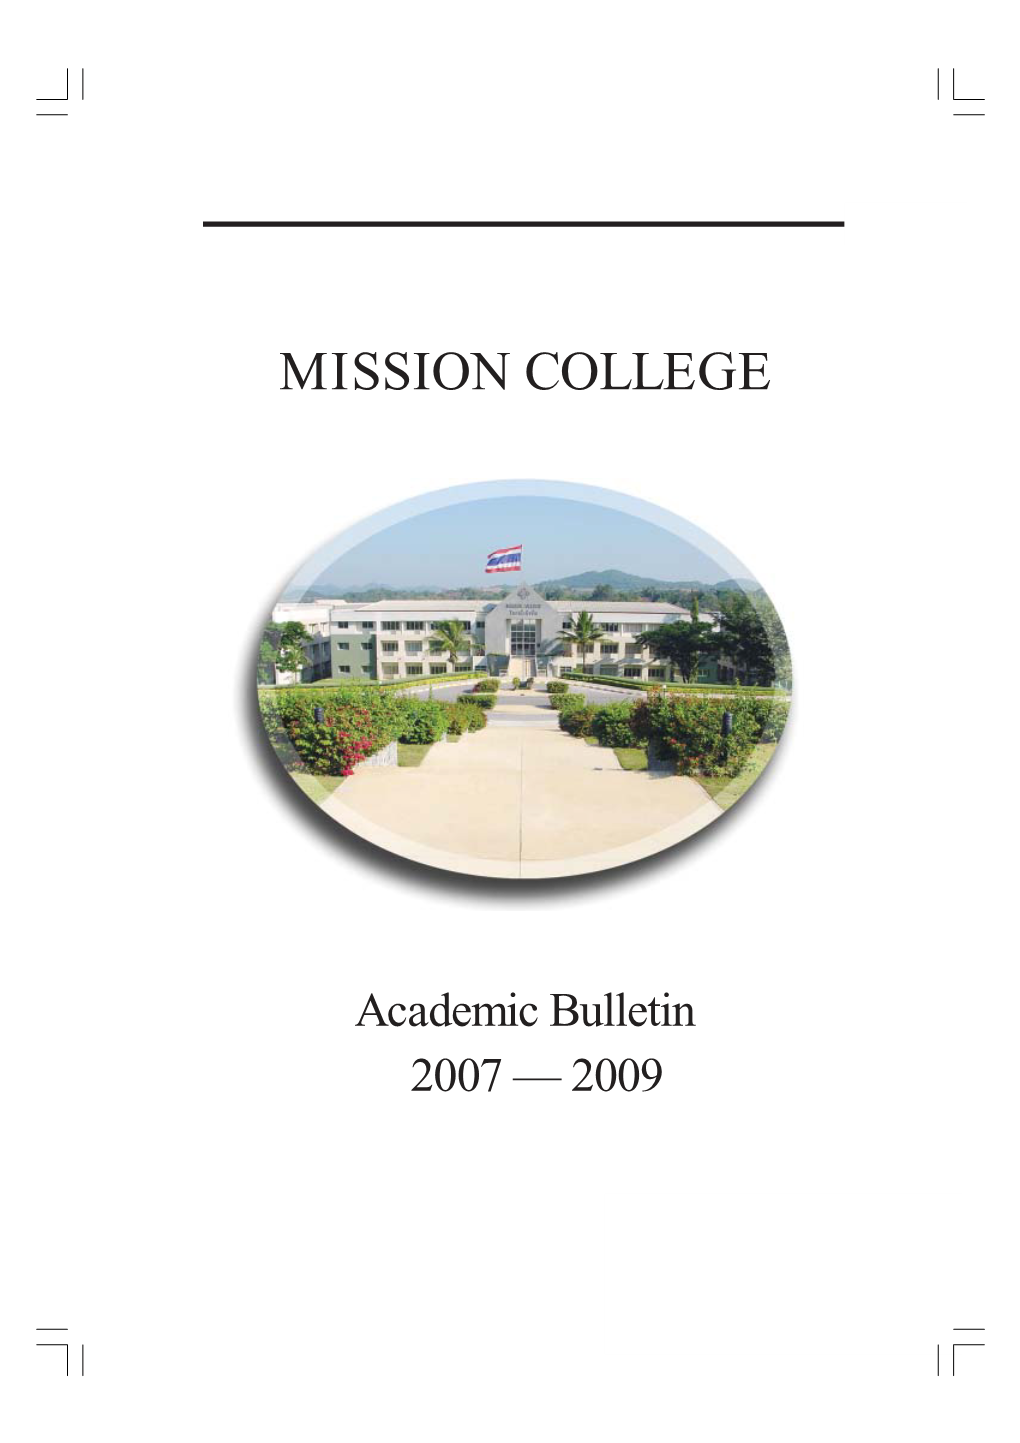 Academic Bulletin 2007 — 2009